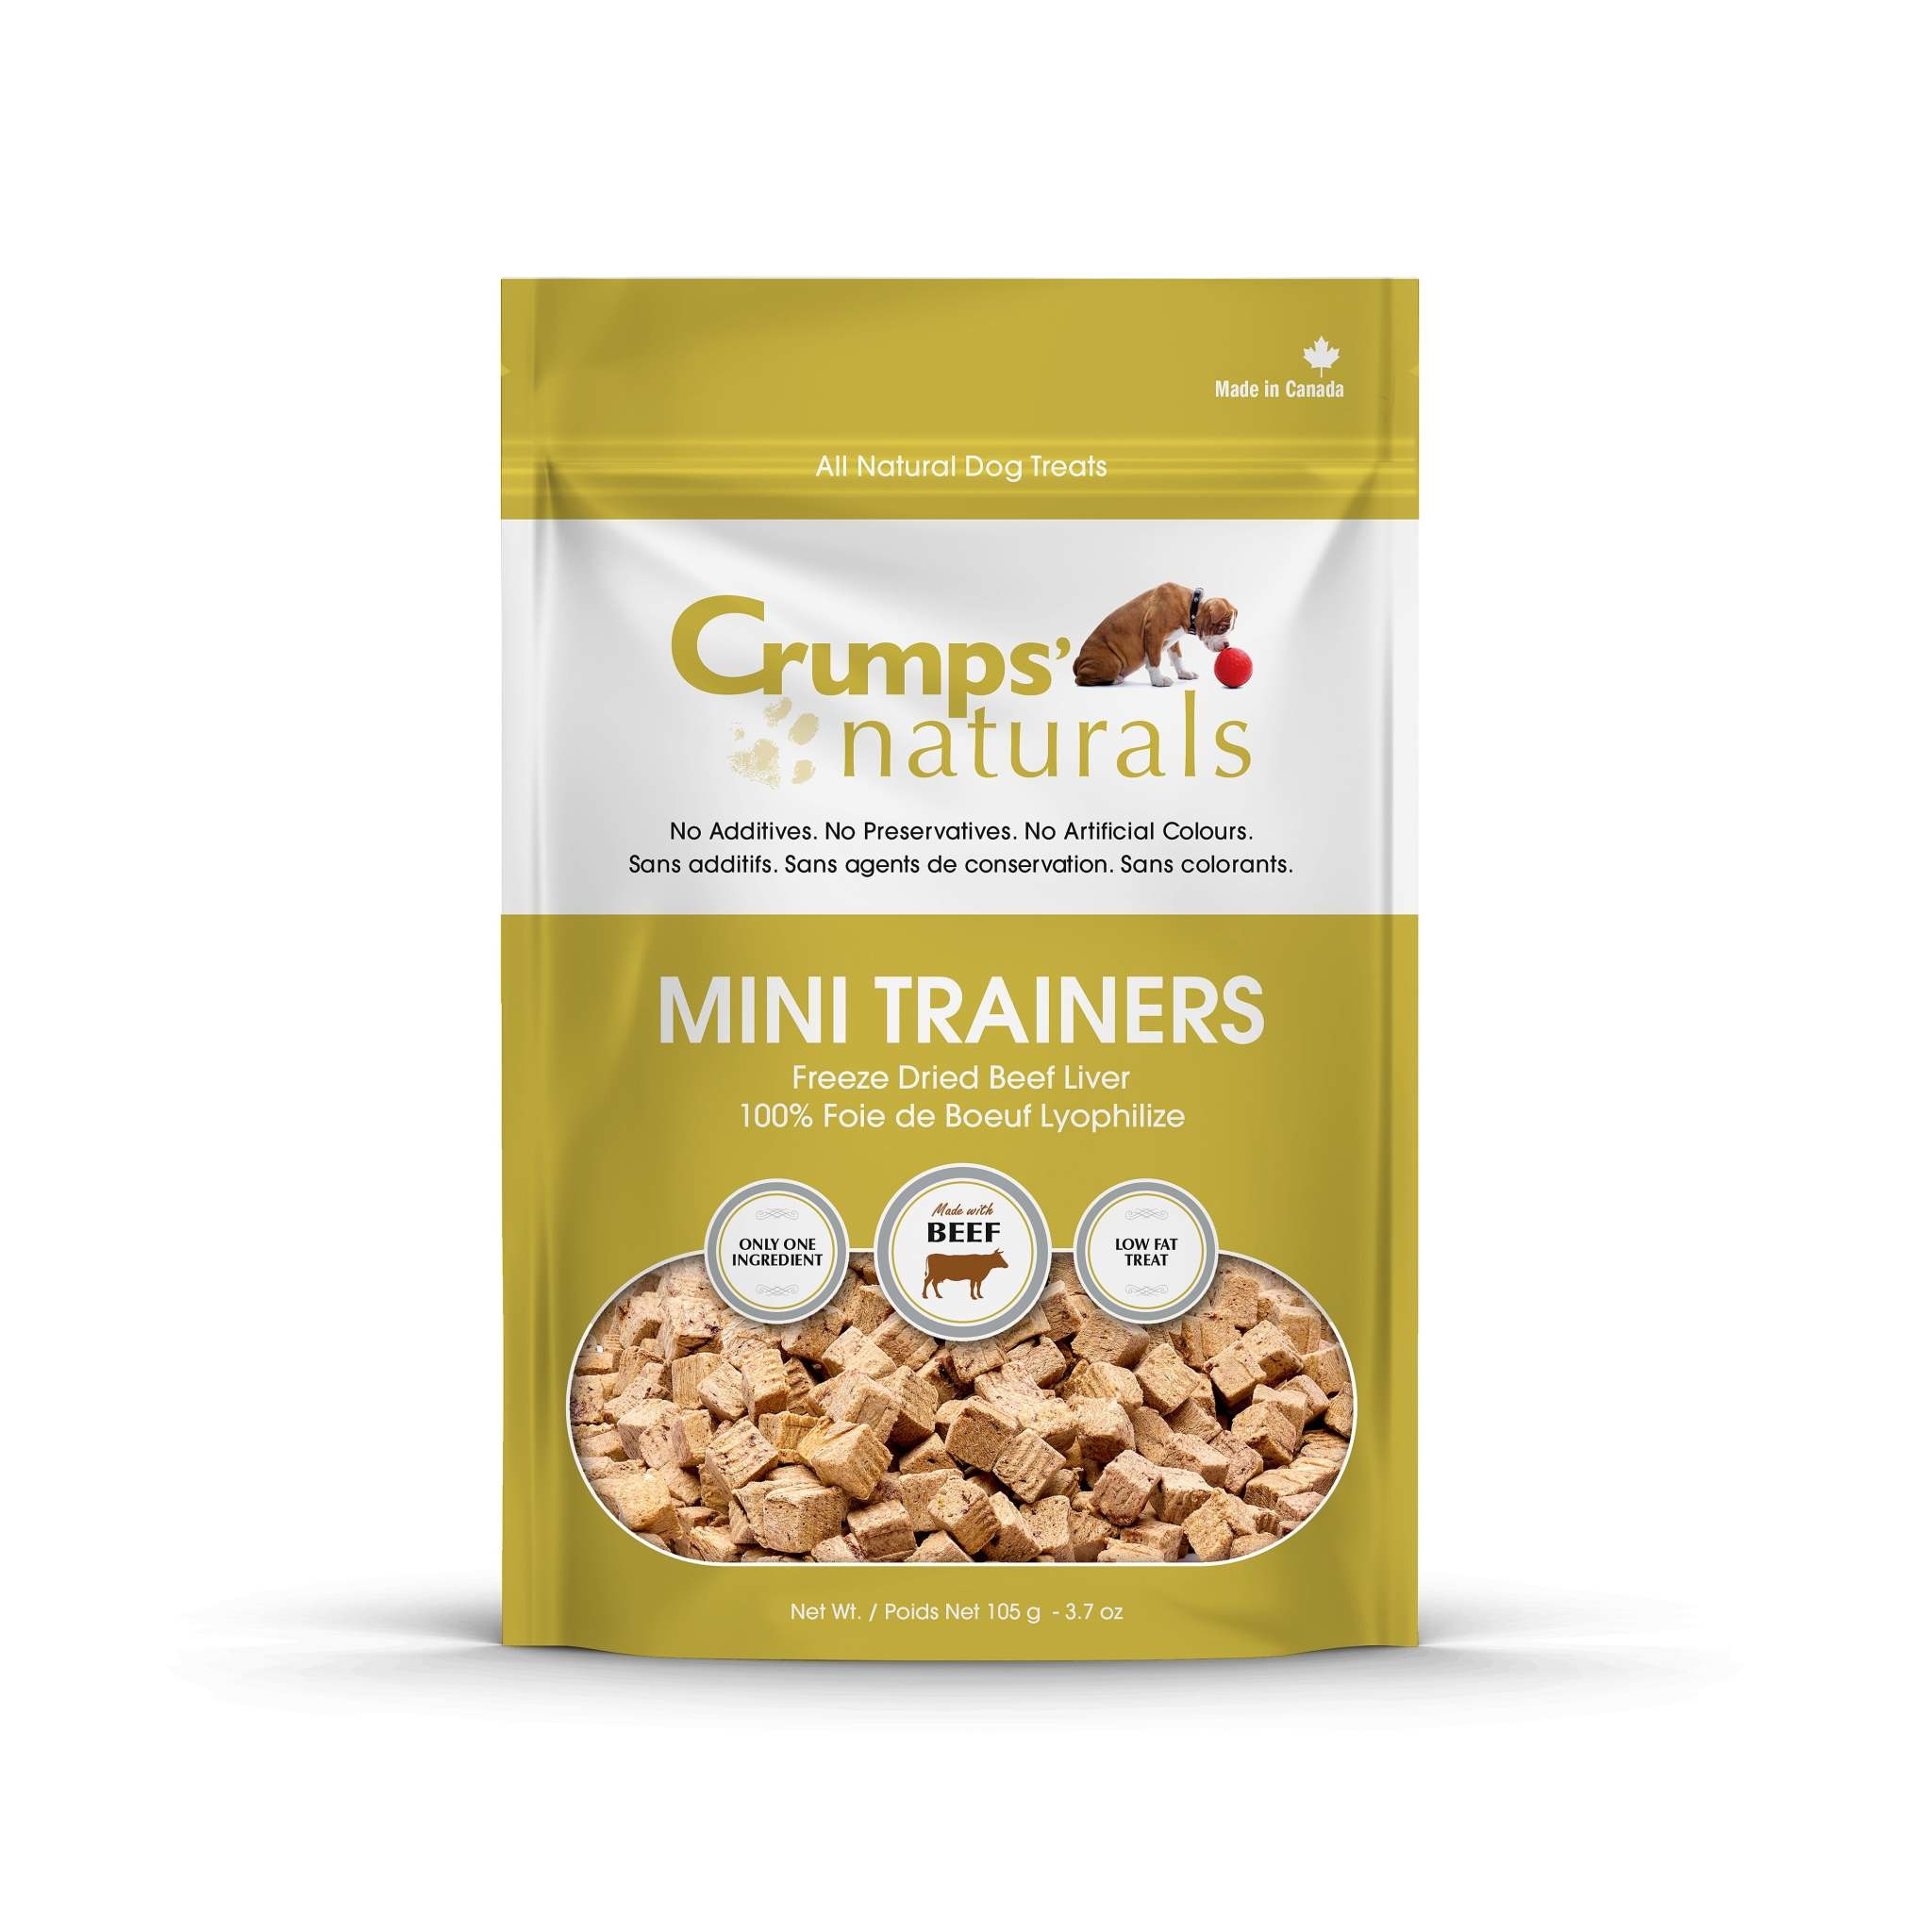 Crumps' Naturals Crumps' - Mini Trainers Beef  Treat 3.7oz Bag